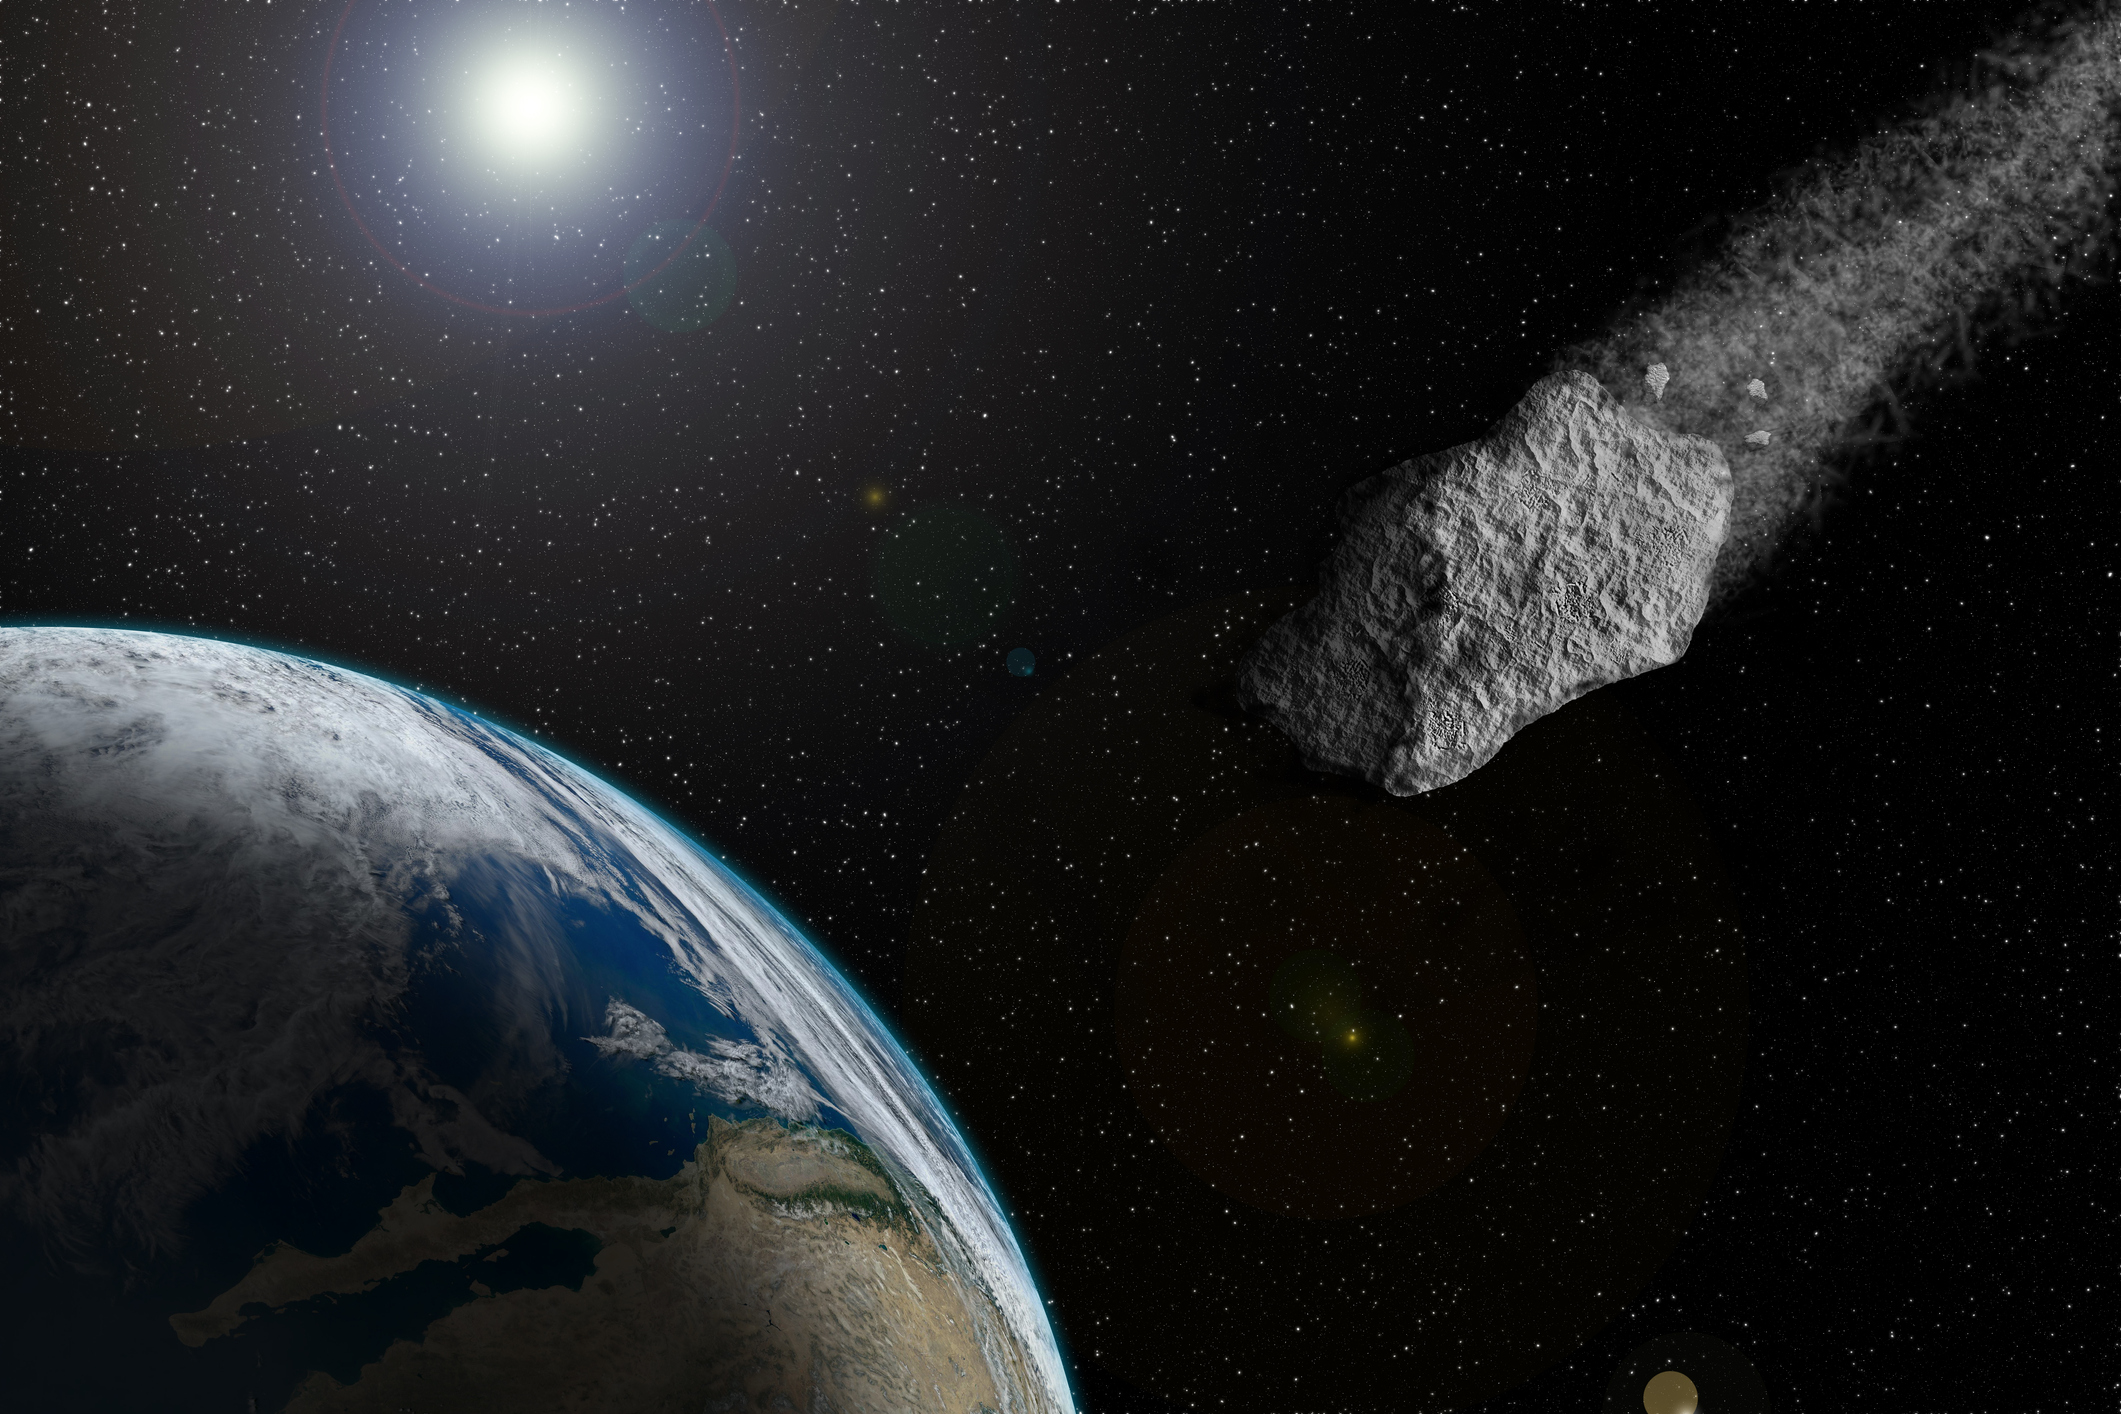 Hatalmas aszteroida repült el a Földhöz közel, magyar amatőr csillagászok is megörökítették az eseményt